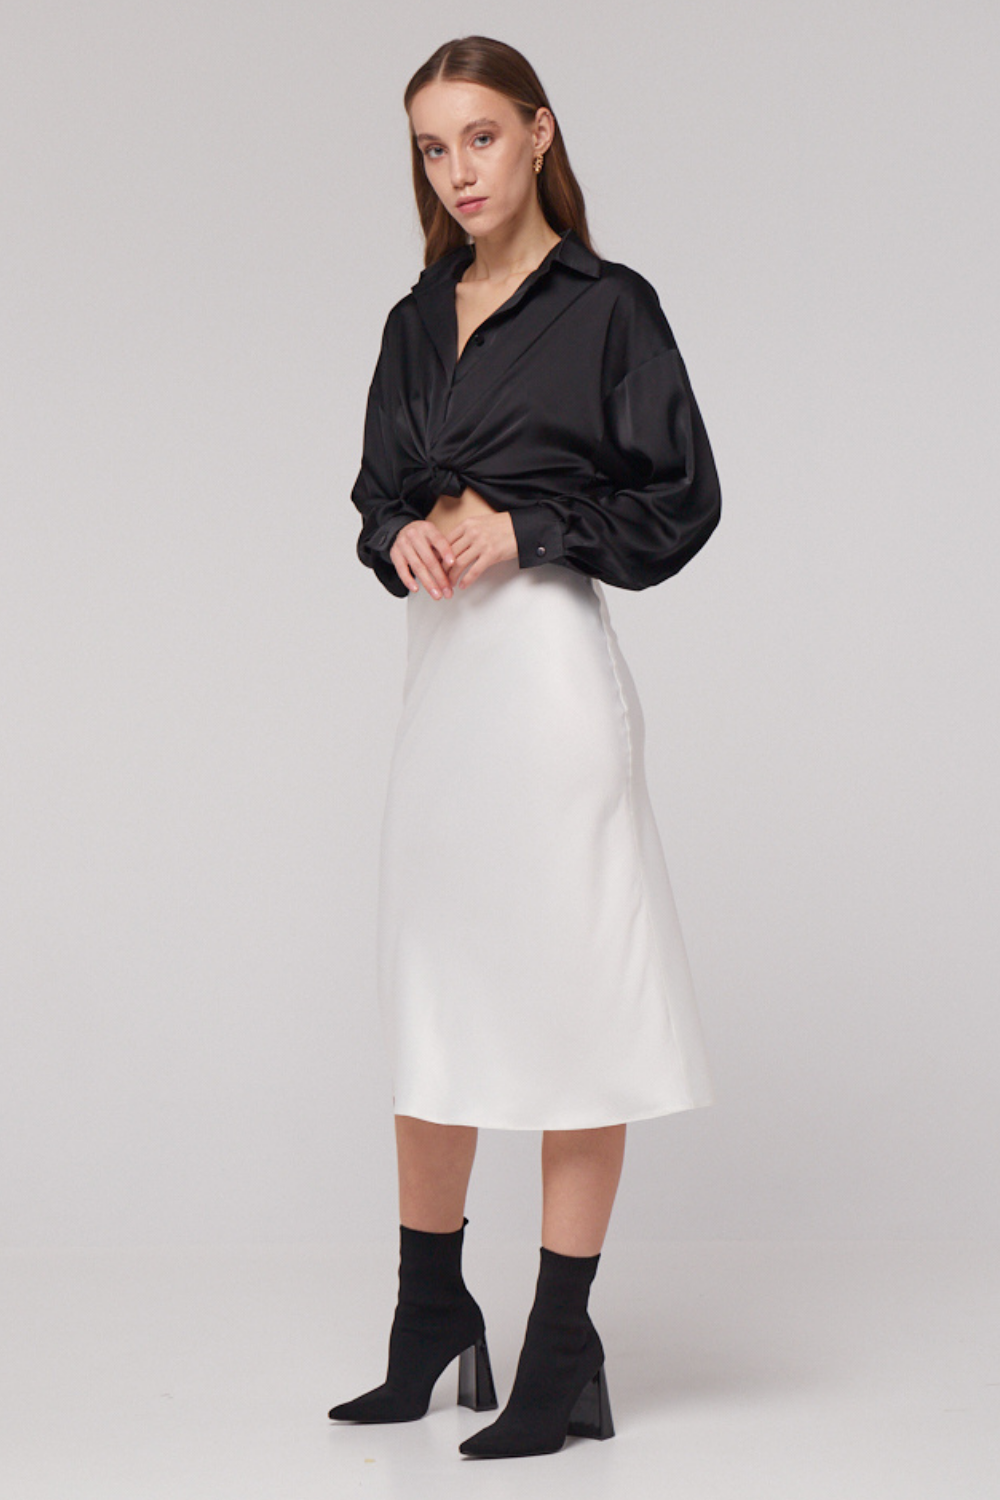 Mléčně bílá hedvábná sukně s elastickým pasem (Mint) 21710